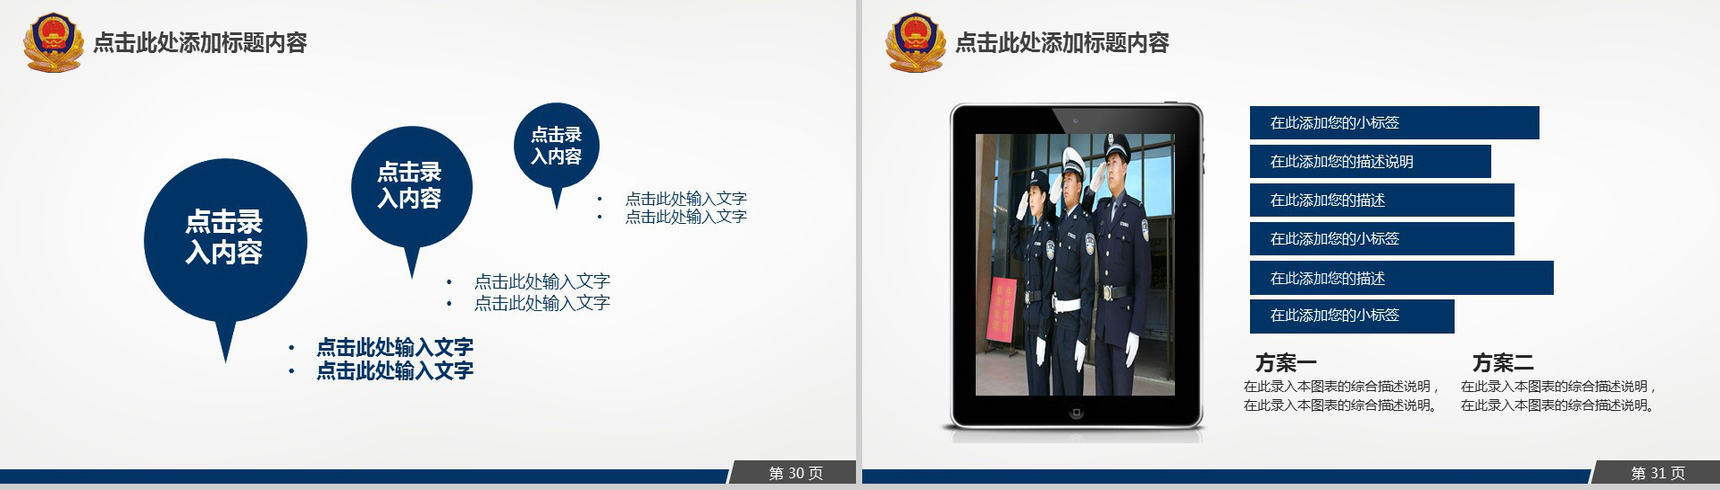 公安消防特警部队专用汇报PPT模板-16